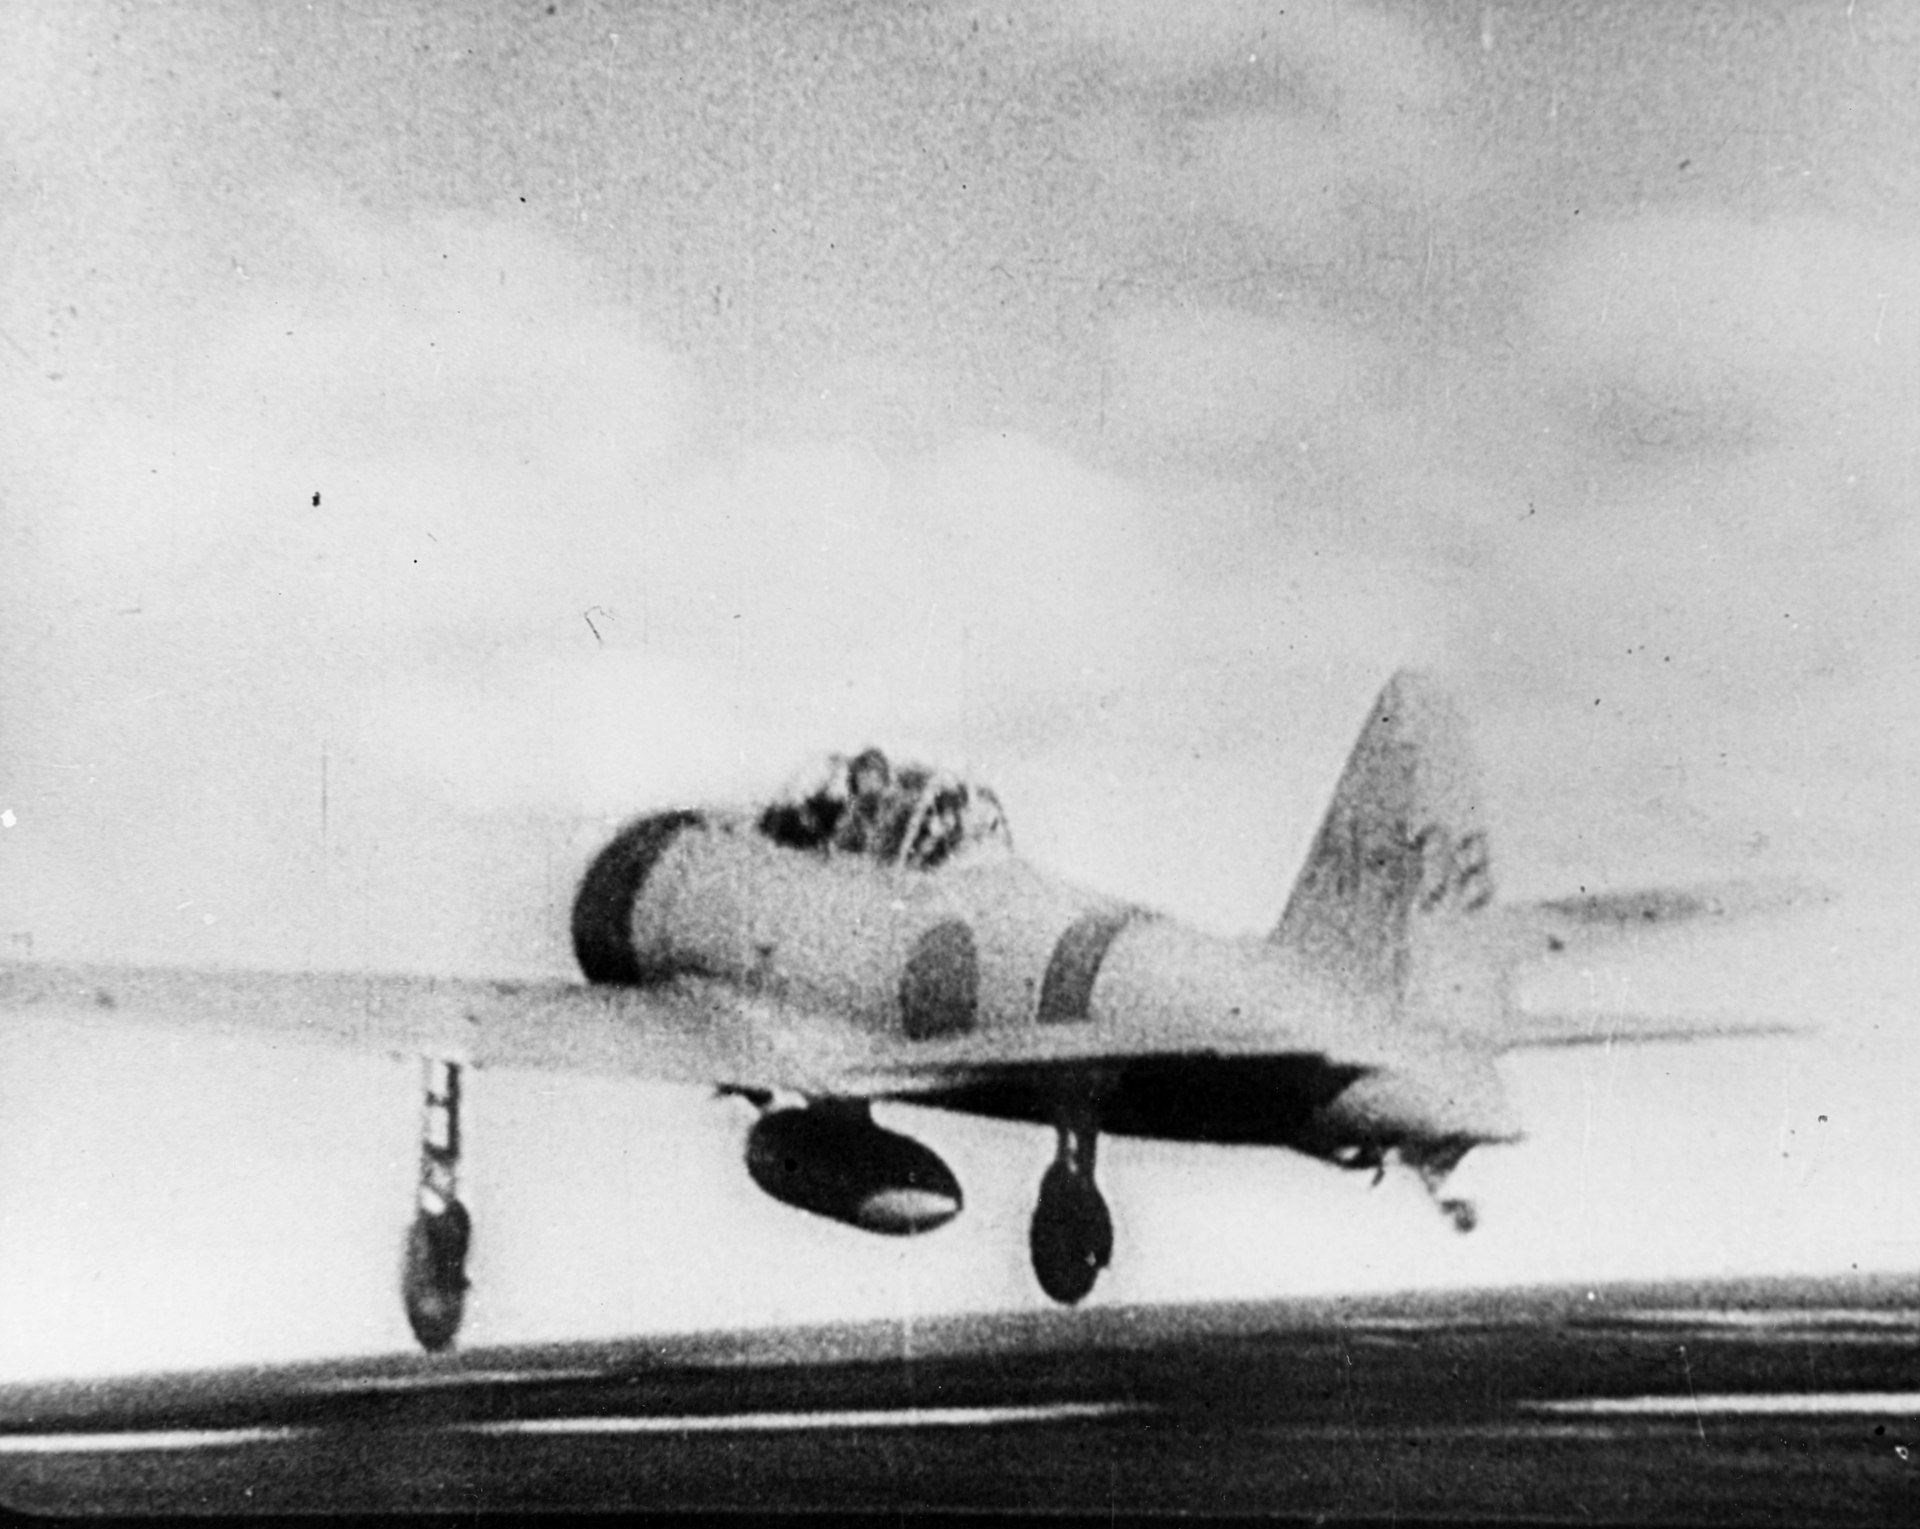 Micubiši A6M2b model 21 s kódem AI-108 startující z letadlové lodě Akagi během útoku na Pearl Harbor